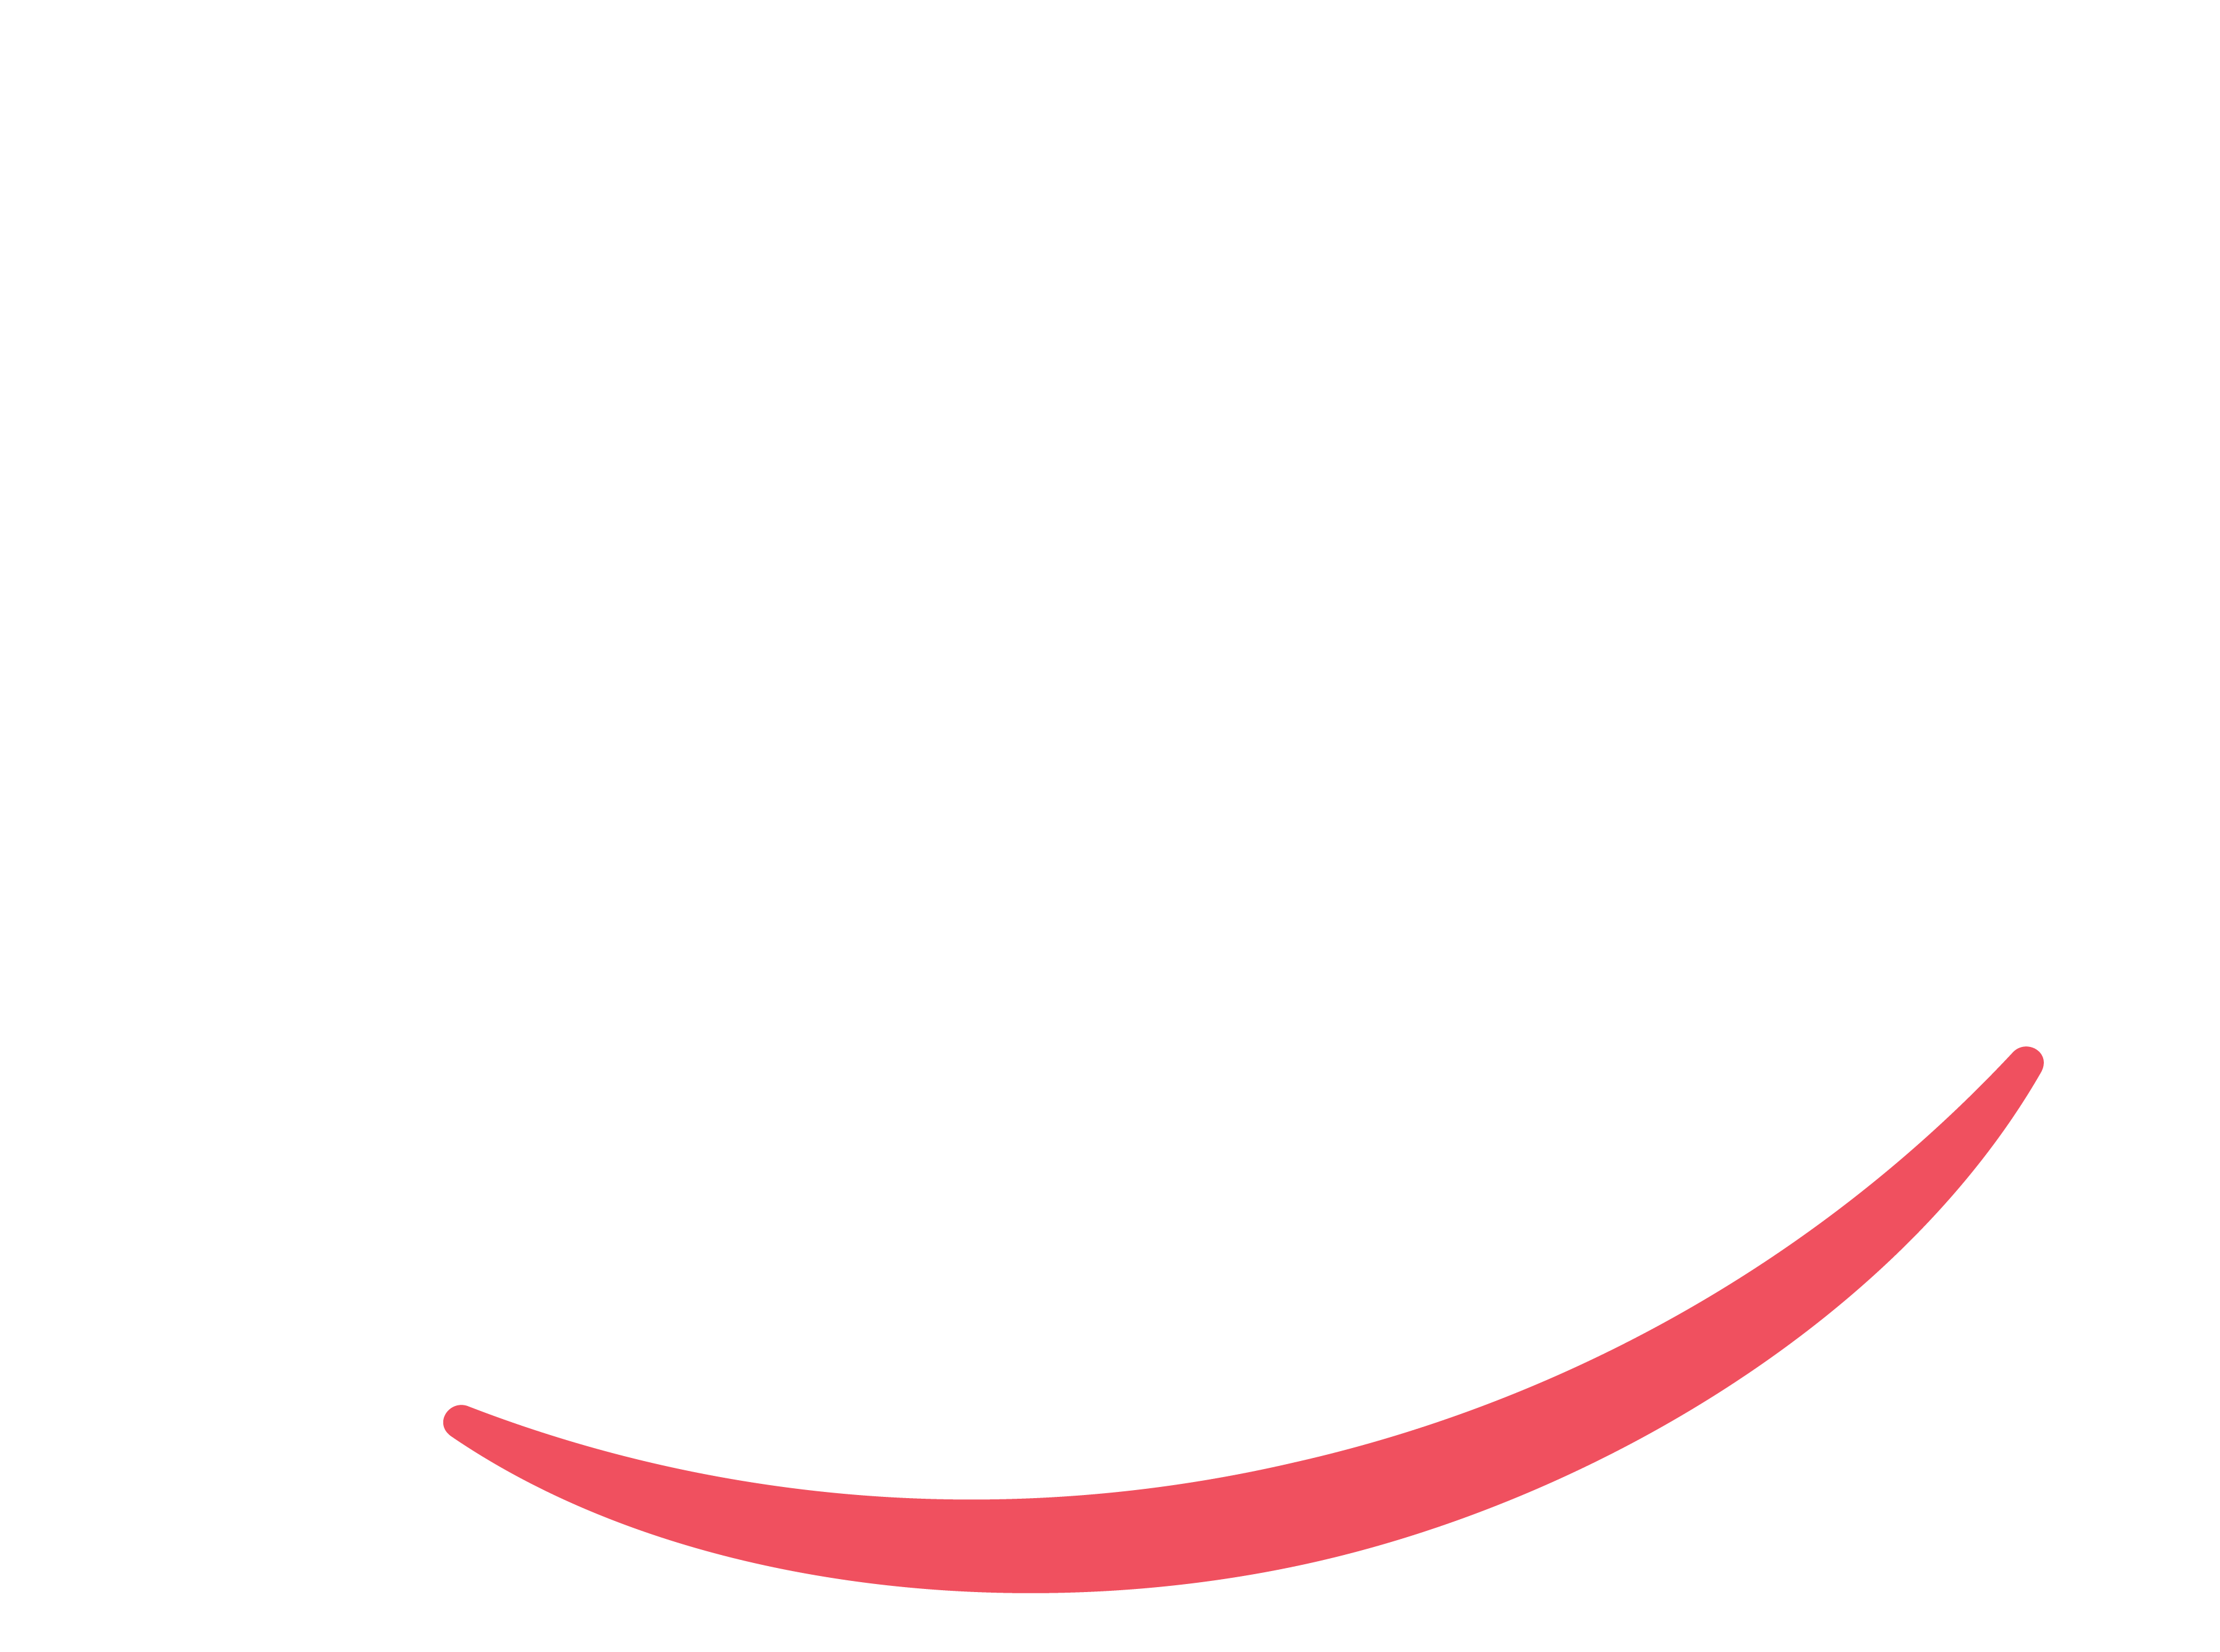 Did We Make You Smile?